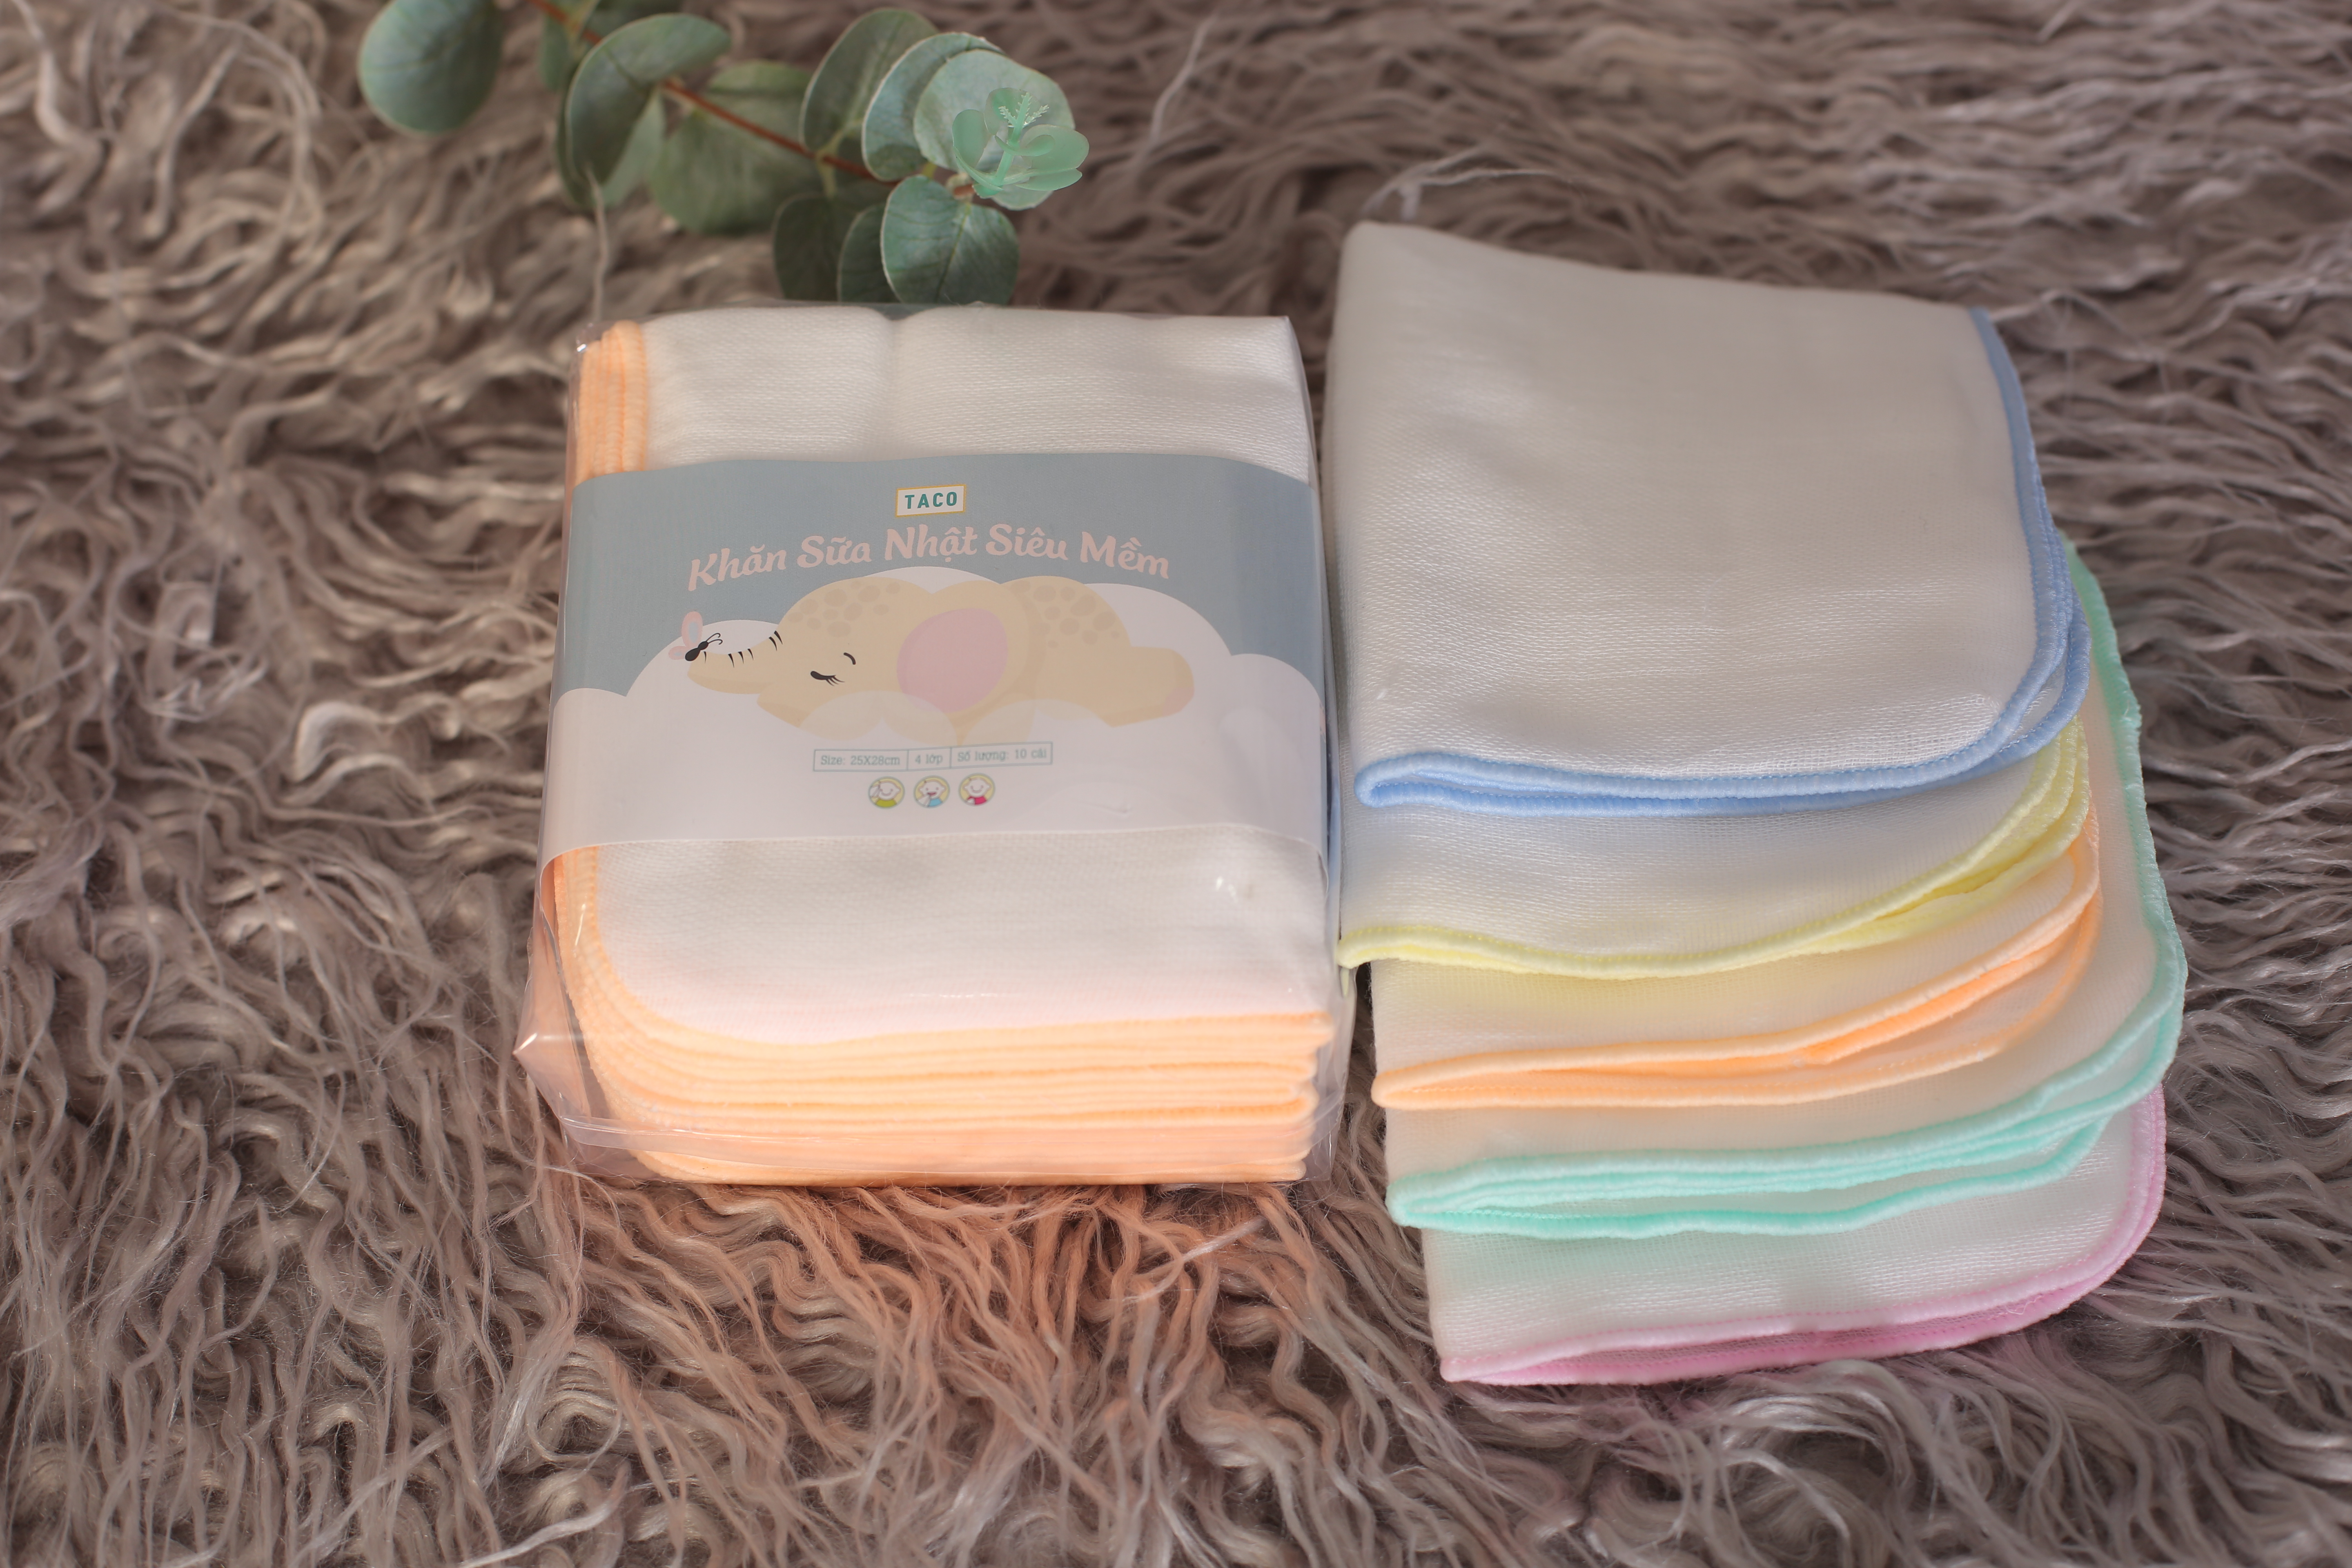 khăn sữa nhiệt siêu mềm 4 lớp, khăn xô, khăn gạc cho em bé - TACO ( Bịch 10 khăn )